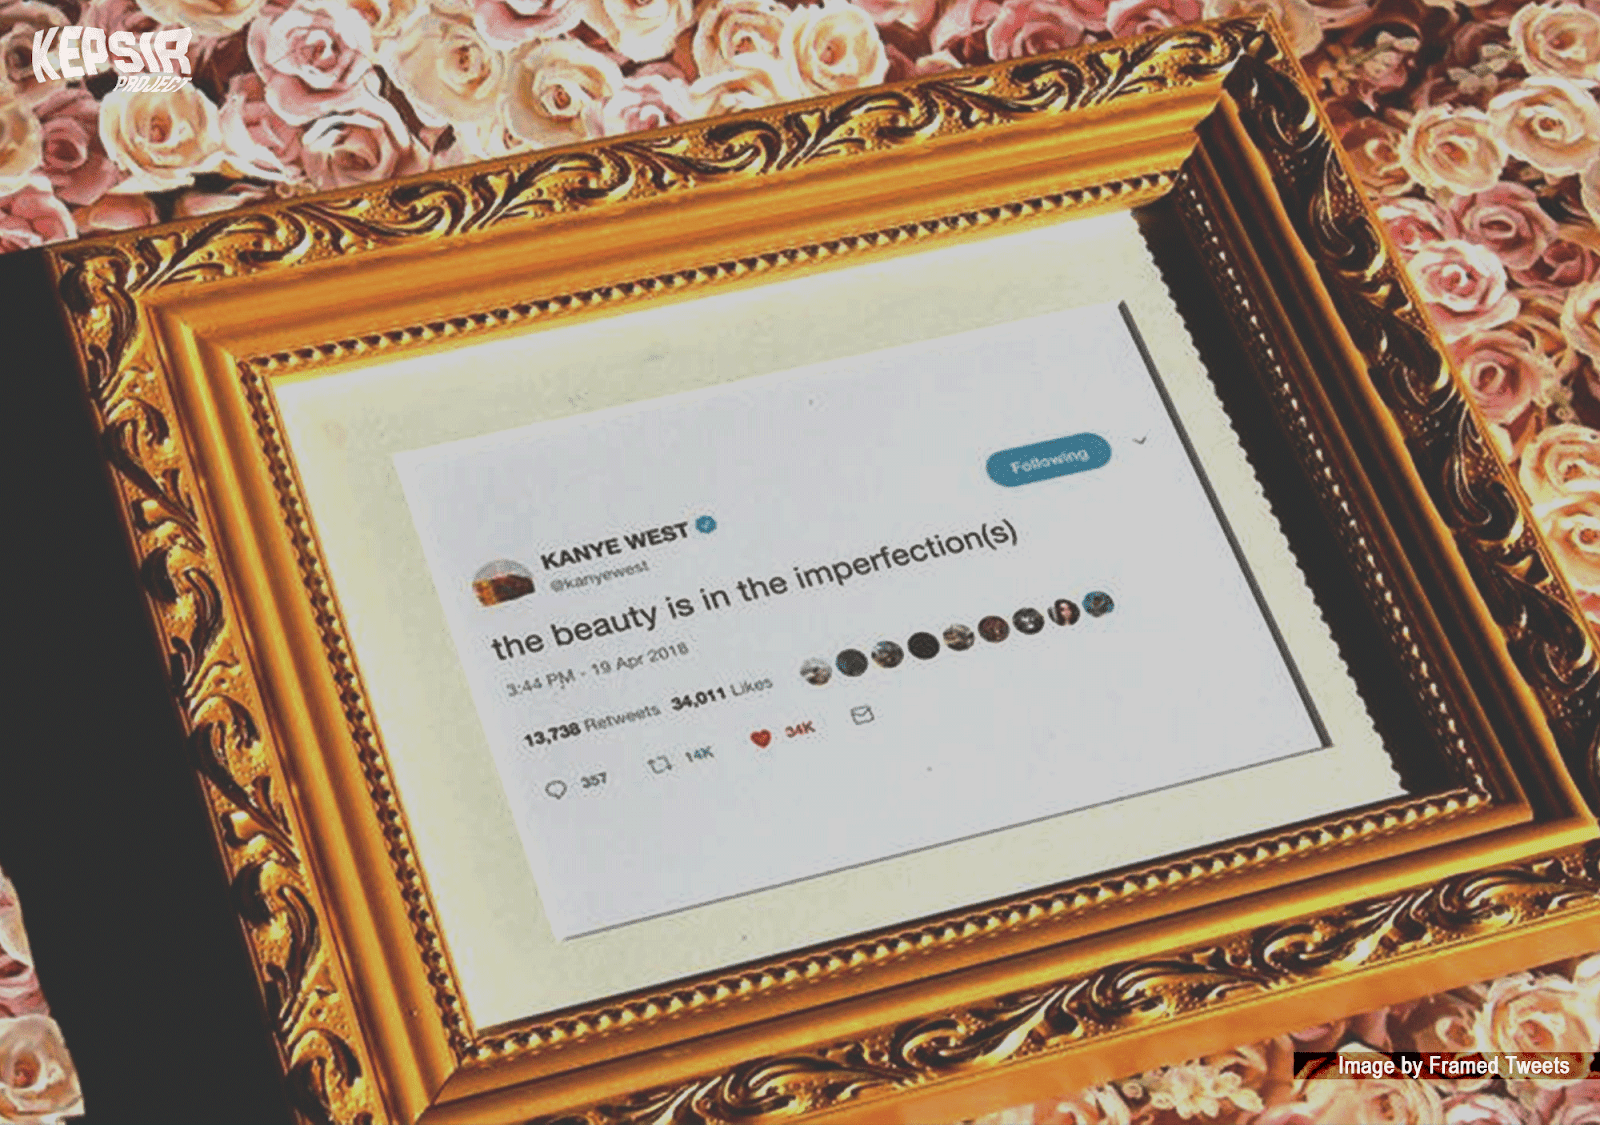 kanyewest pict What The F! Tweet-nya si Kanye West Dibingkai terus Dijual dengan Harga $49